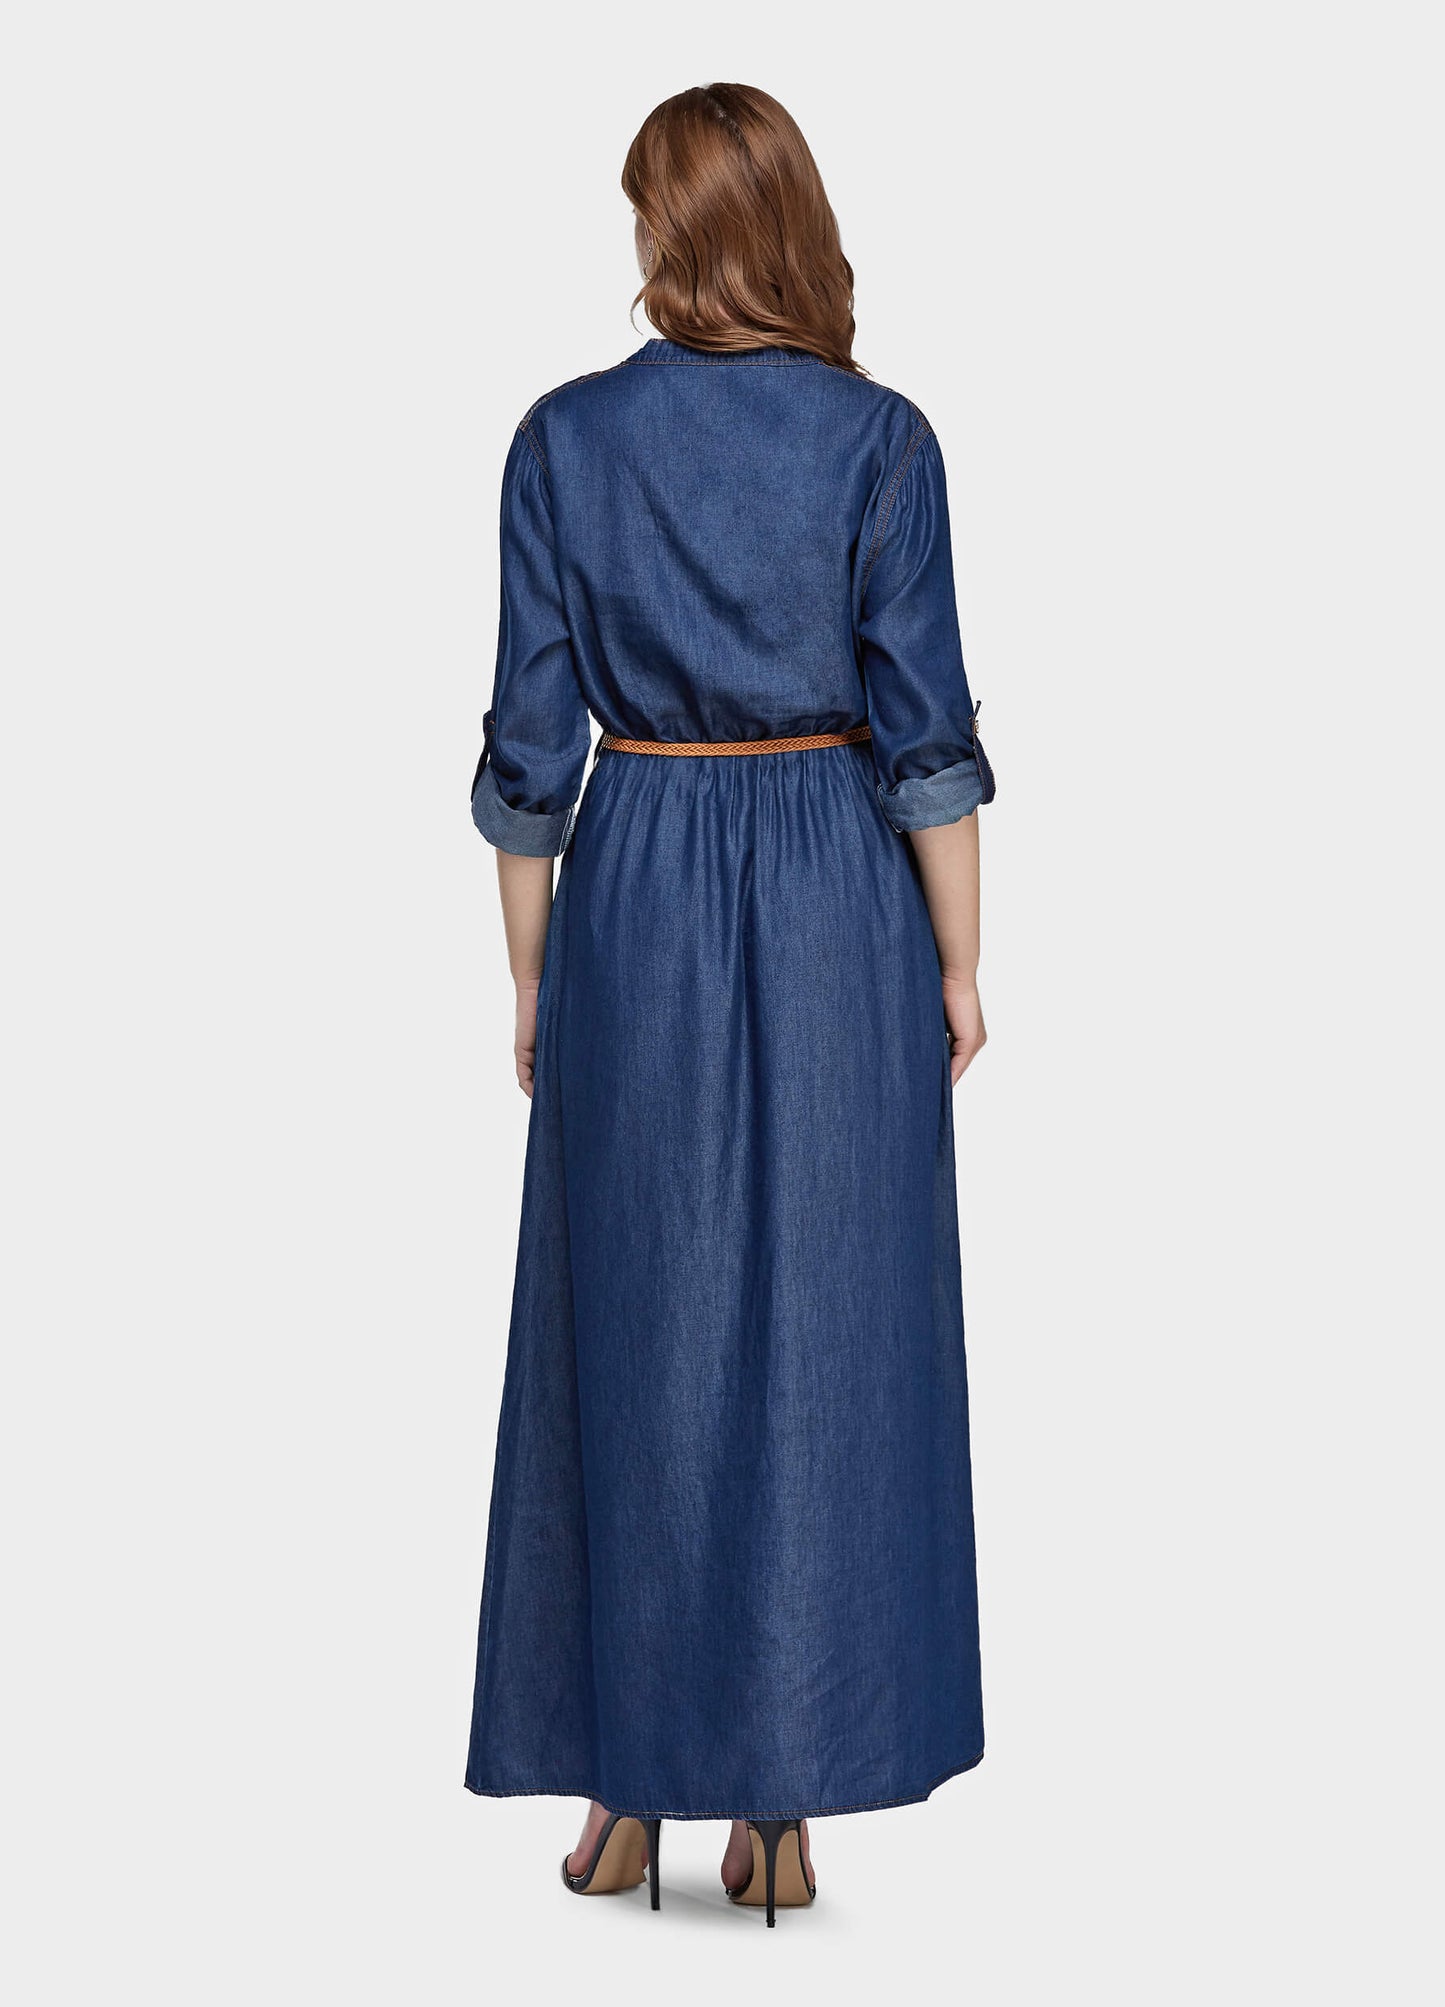 Women's Long Sleeve Denim Shirt Dress-Mid Blue back view